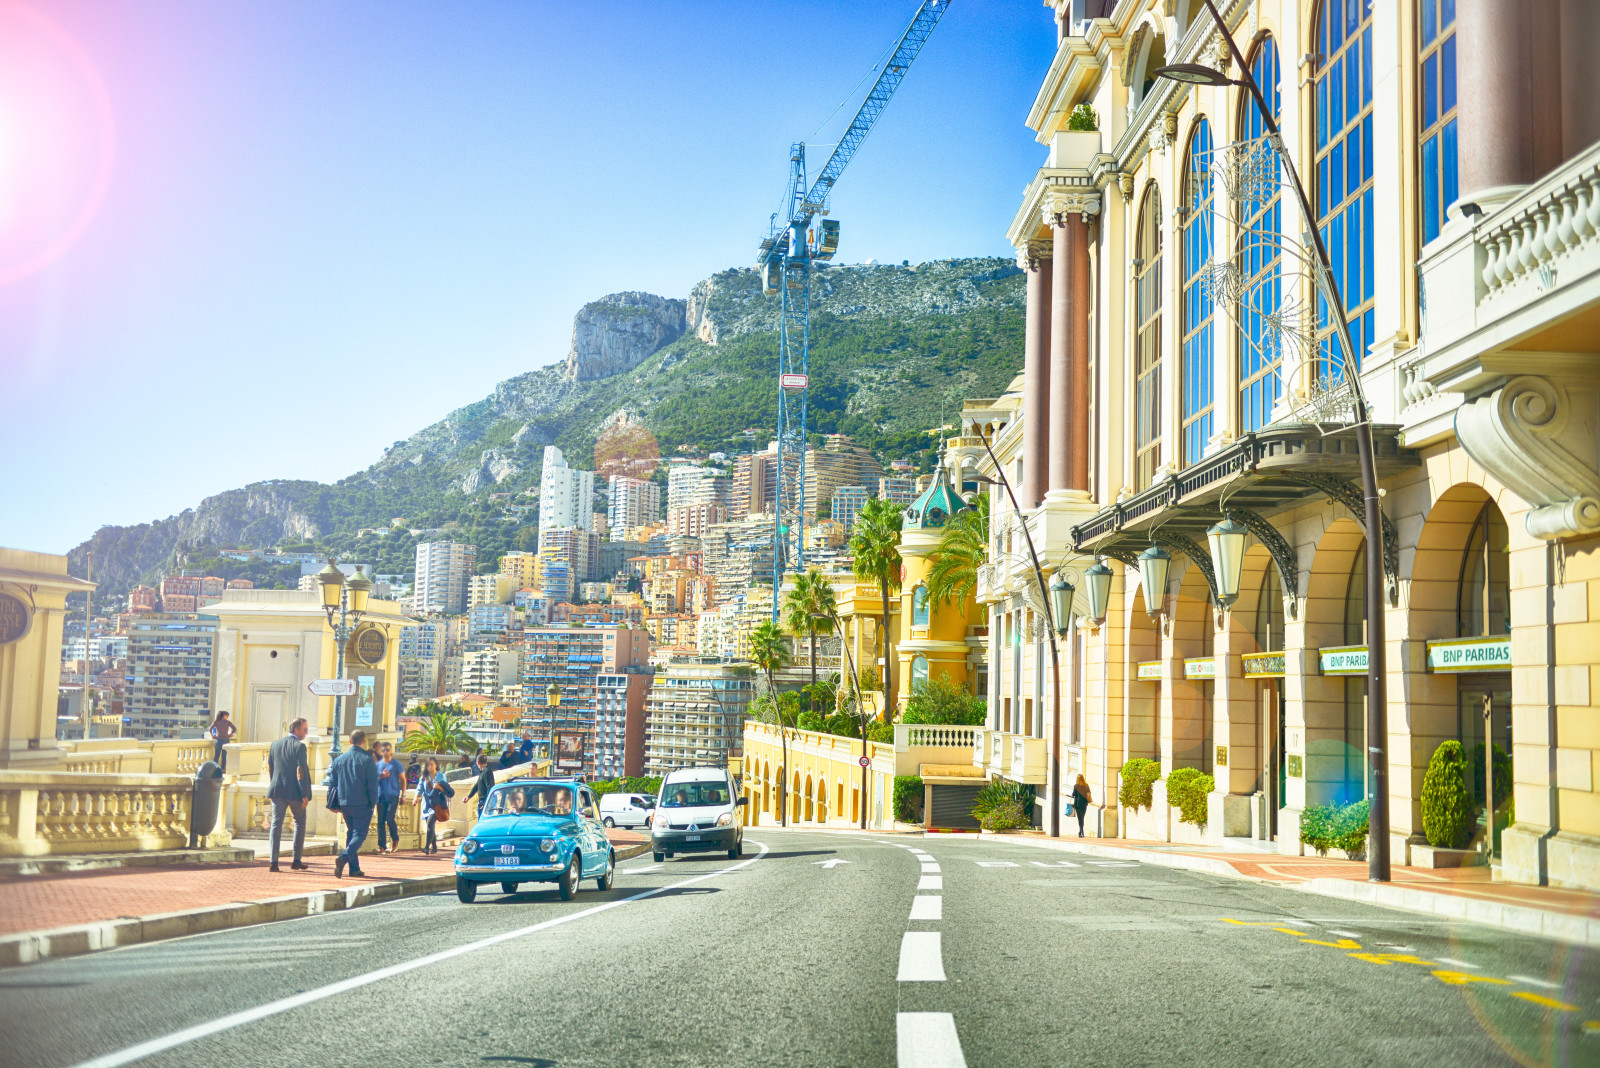 đường phố, Mọi người, xây dựng, Máy móc, Monaco, Châu âu, xe hơi, máy trục